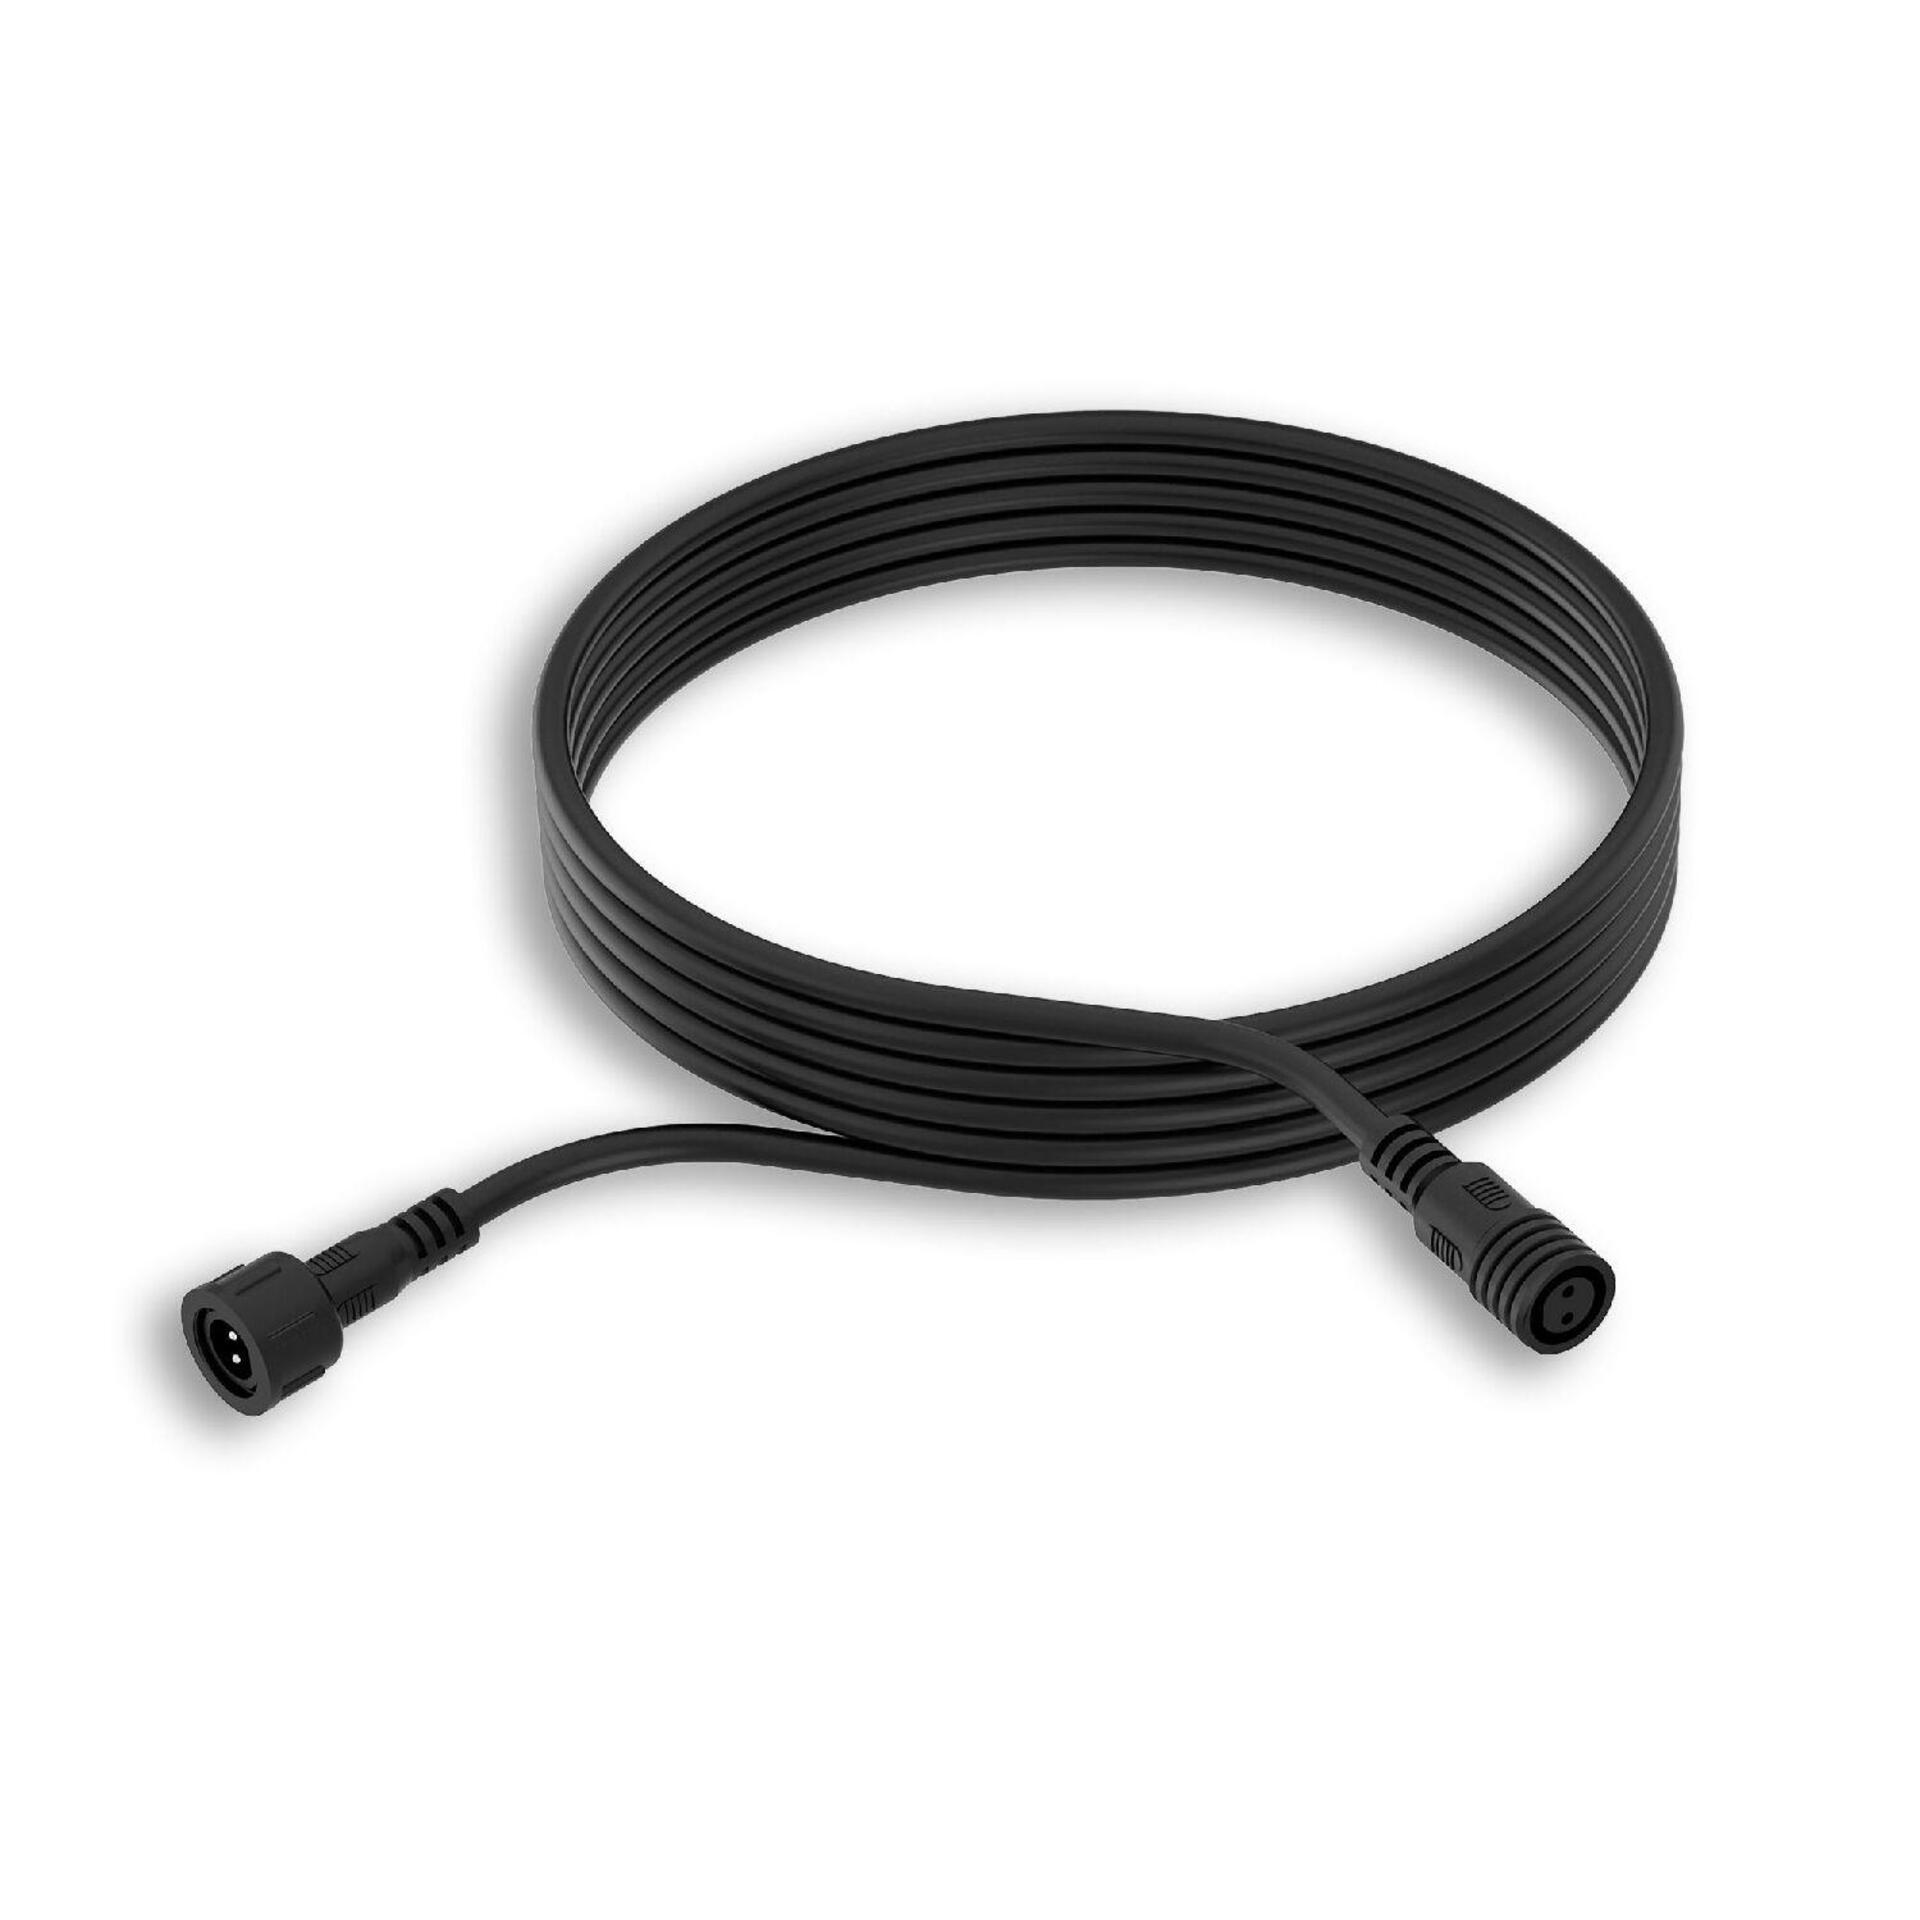 Philips GardenLink prodlužovací kabel 5m IP67, černé